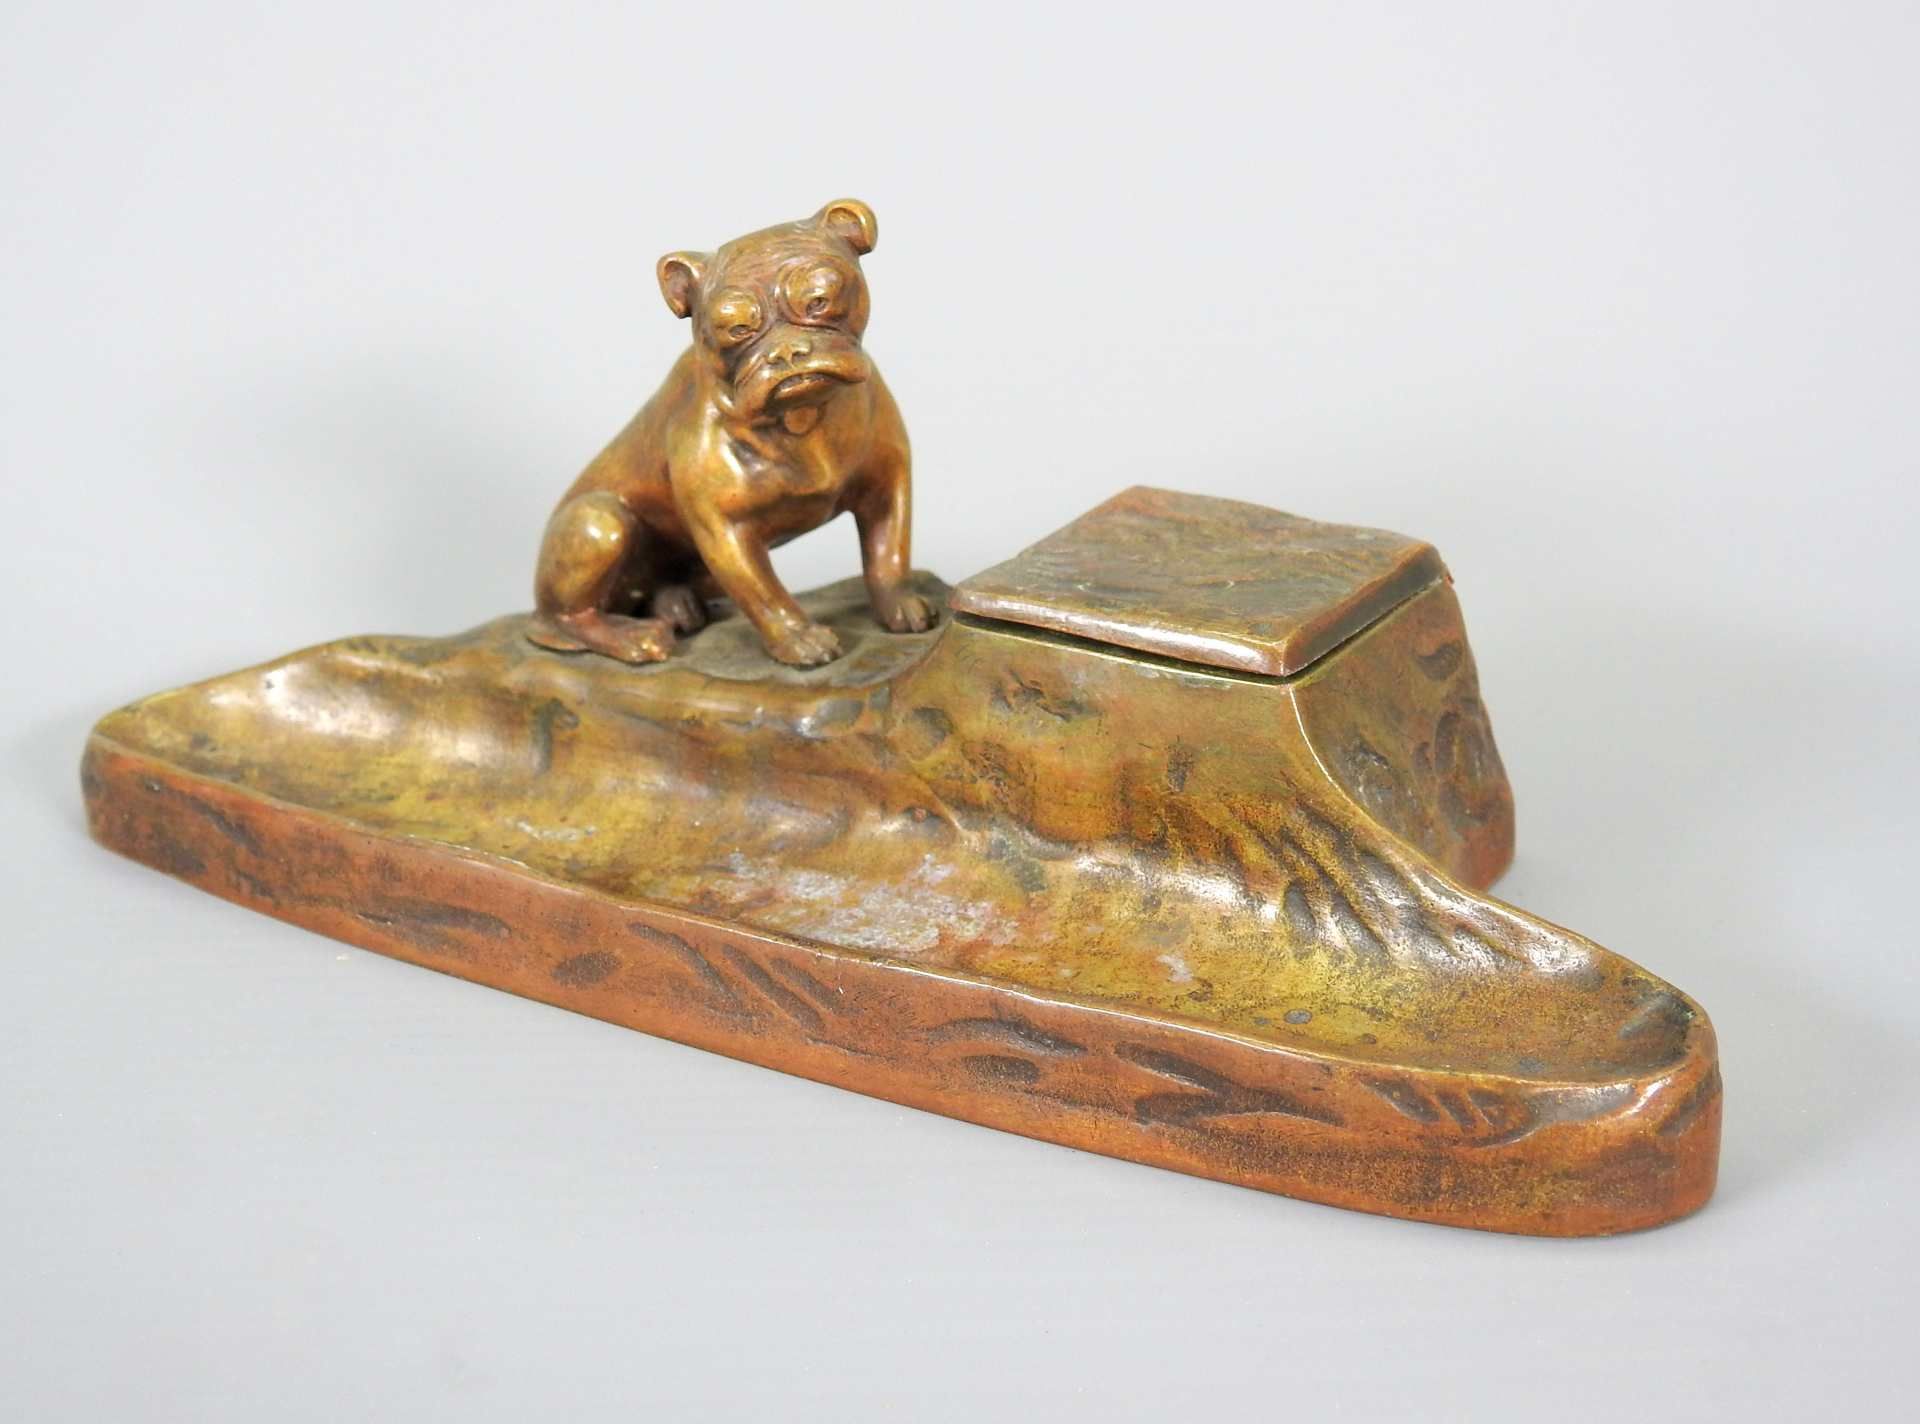 Tusca, Bronze-Tischset Bronze, braun patiniert. Stiftablage mit sitzender Bulldogge au - Bild 4 aus 5